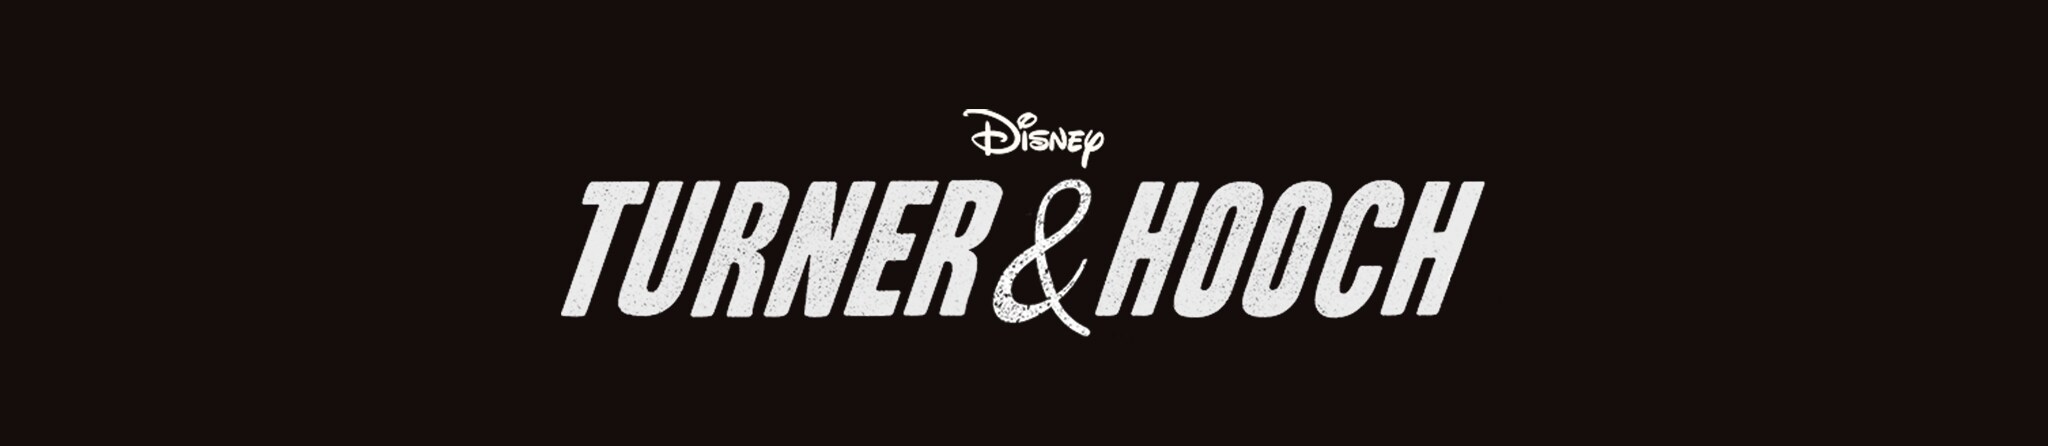 Disney | Turner & Hooch